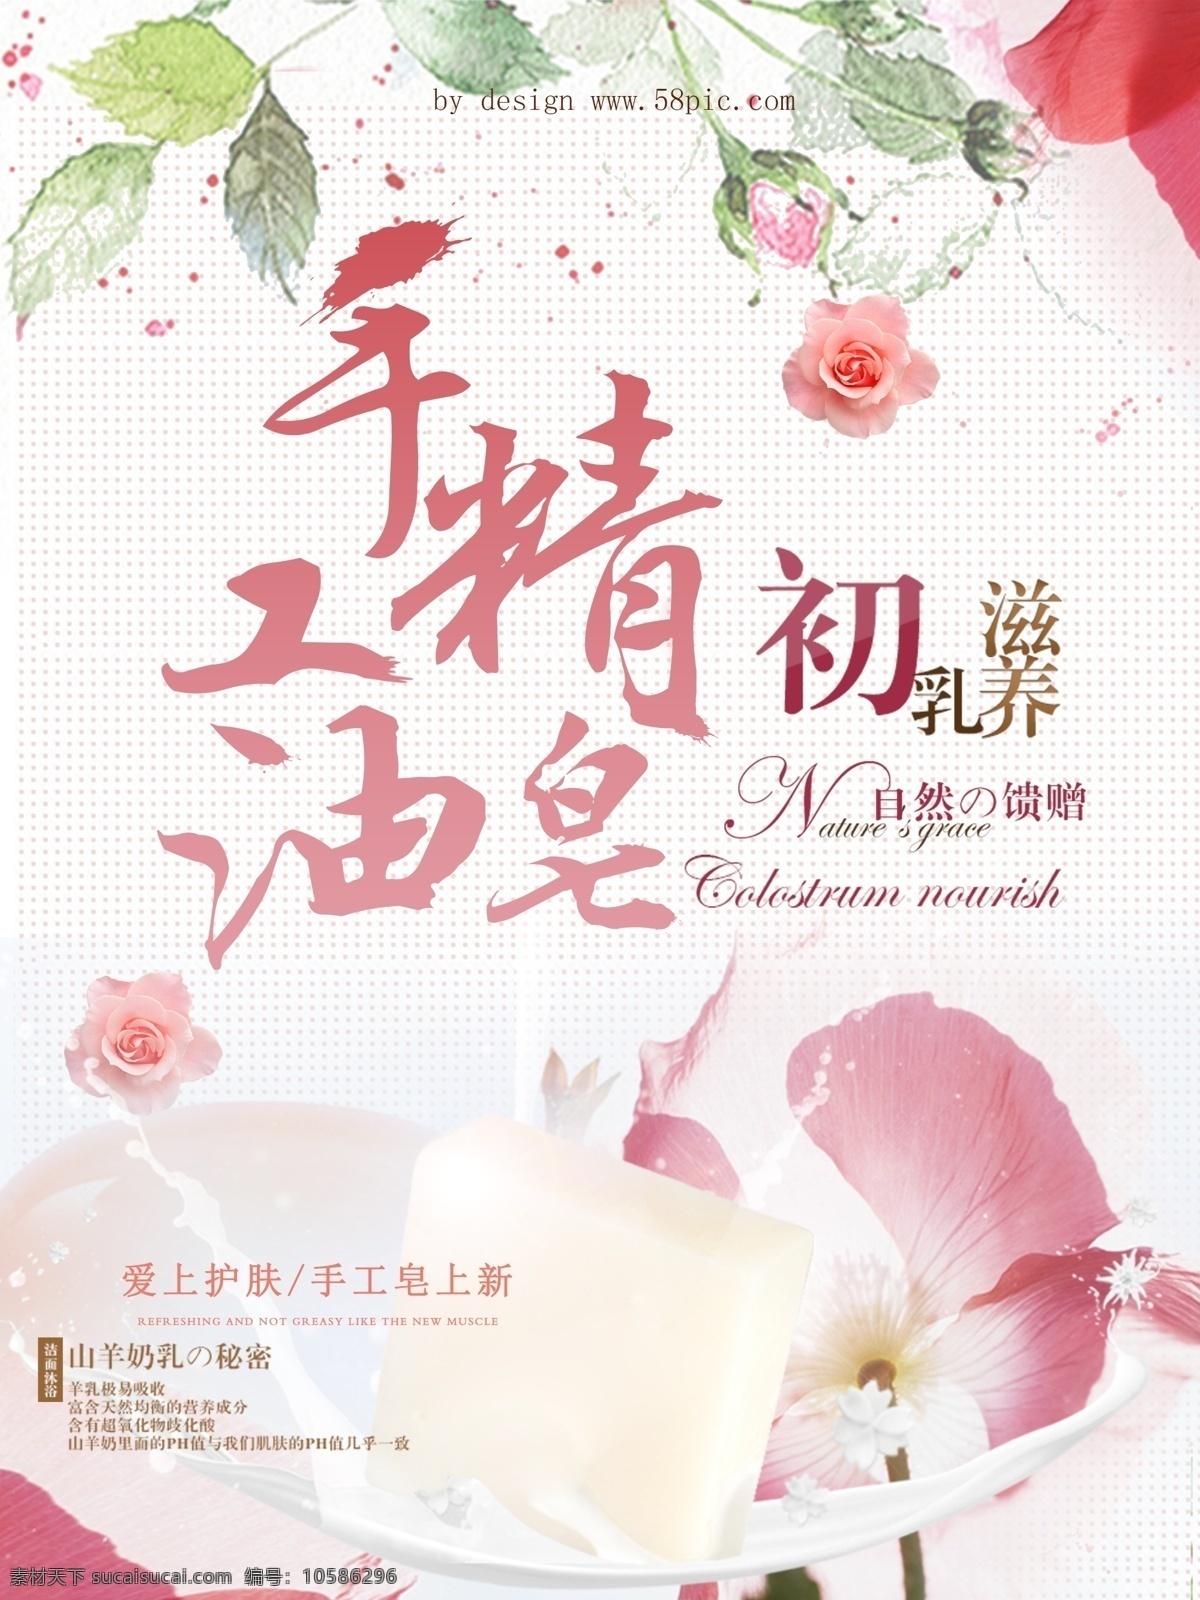 手工 皂 促销 精油 手工皂 促销海报设计 宣传 初乳 滋养 自然的馈赠 花朵 树叶 牛奶